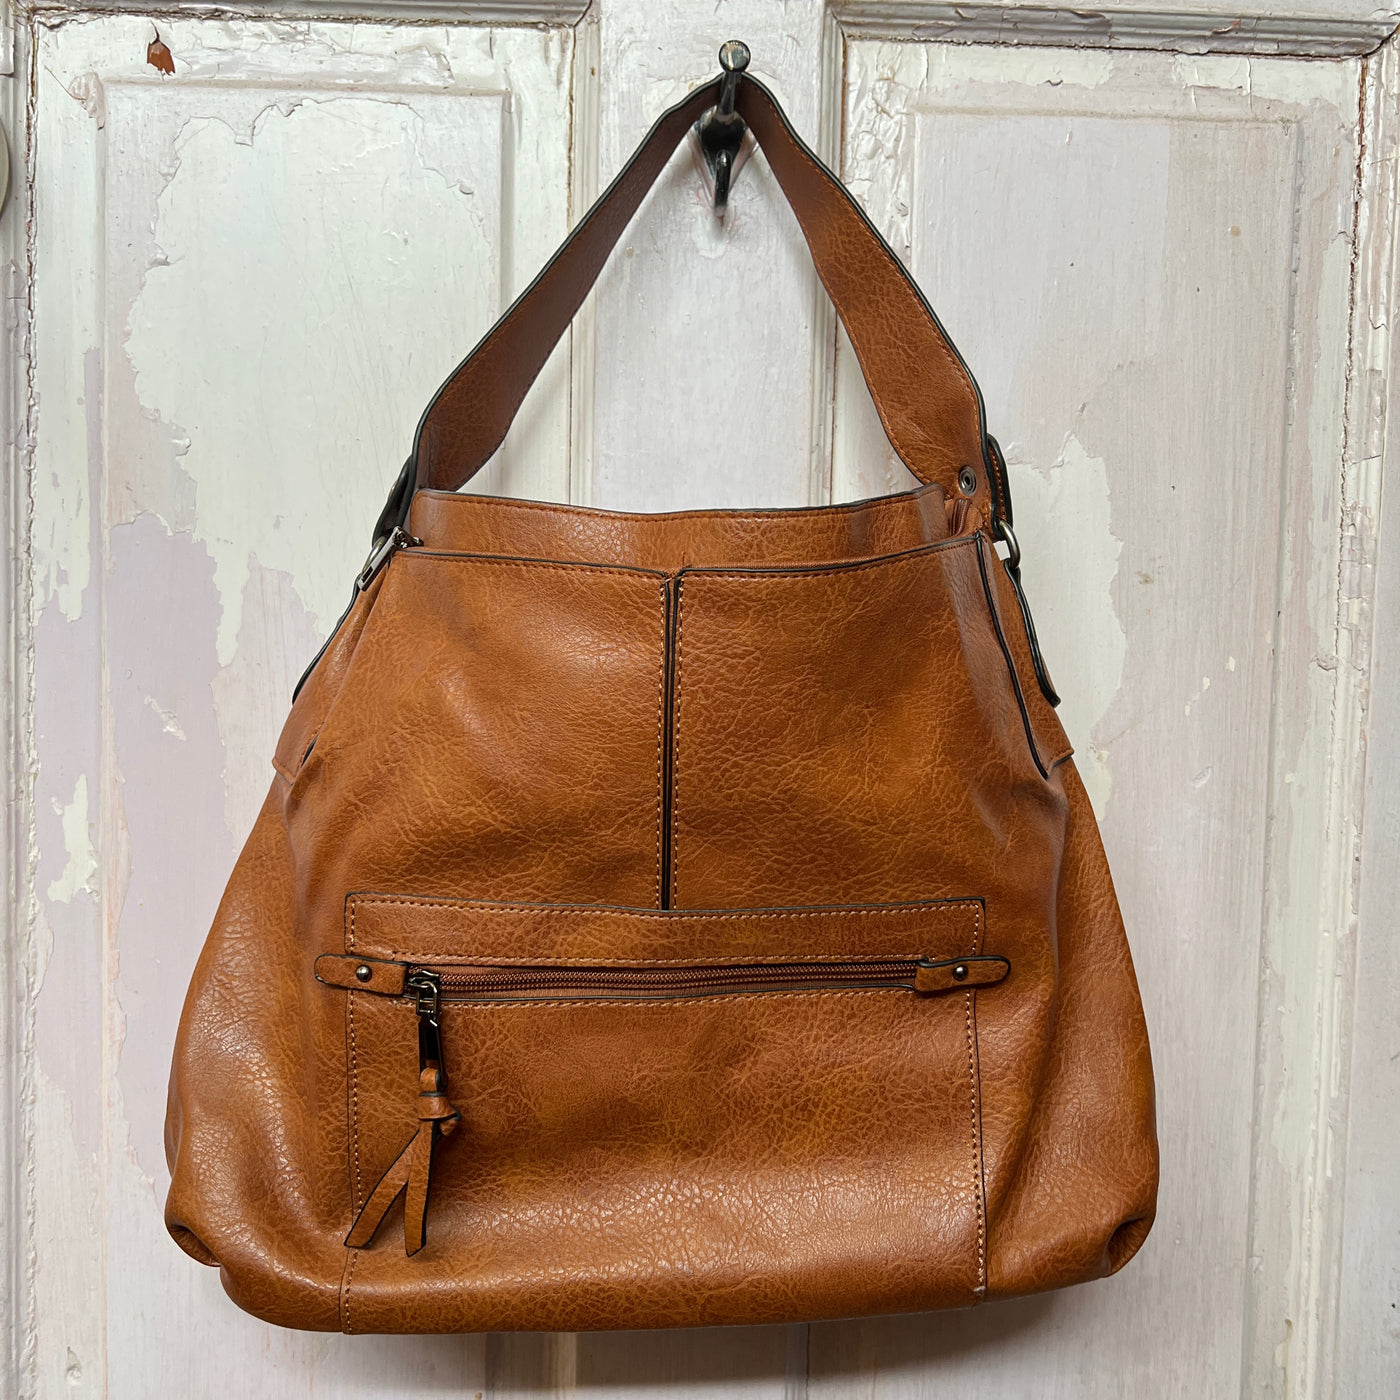 Addison Slouchy Handbag - Brown